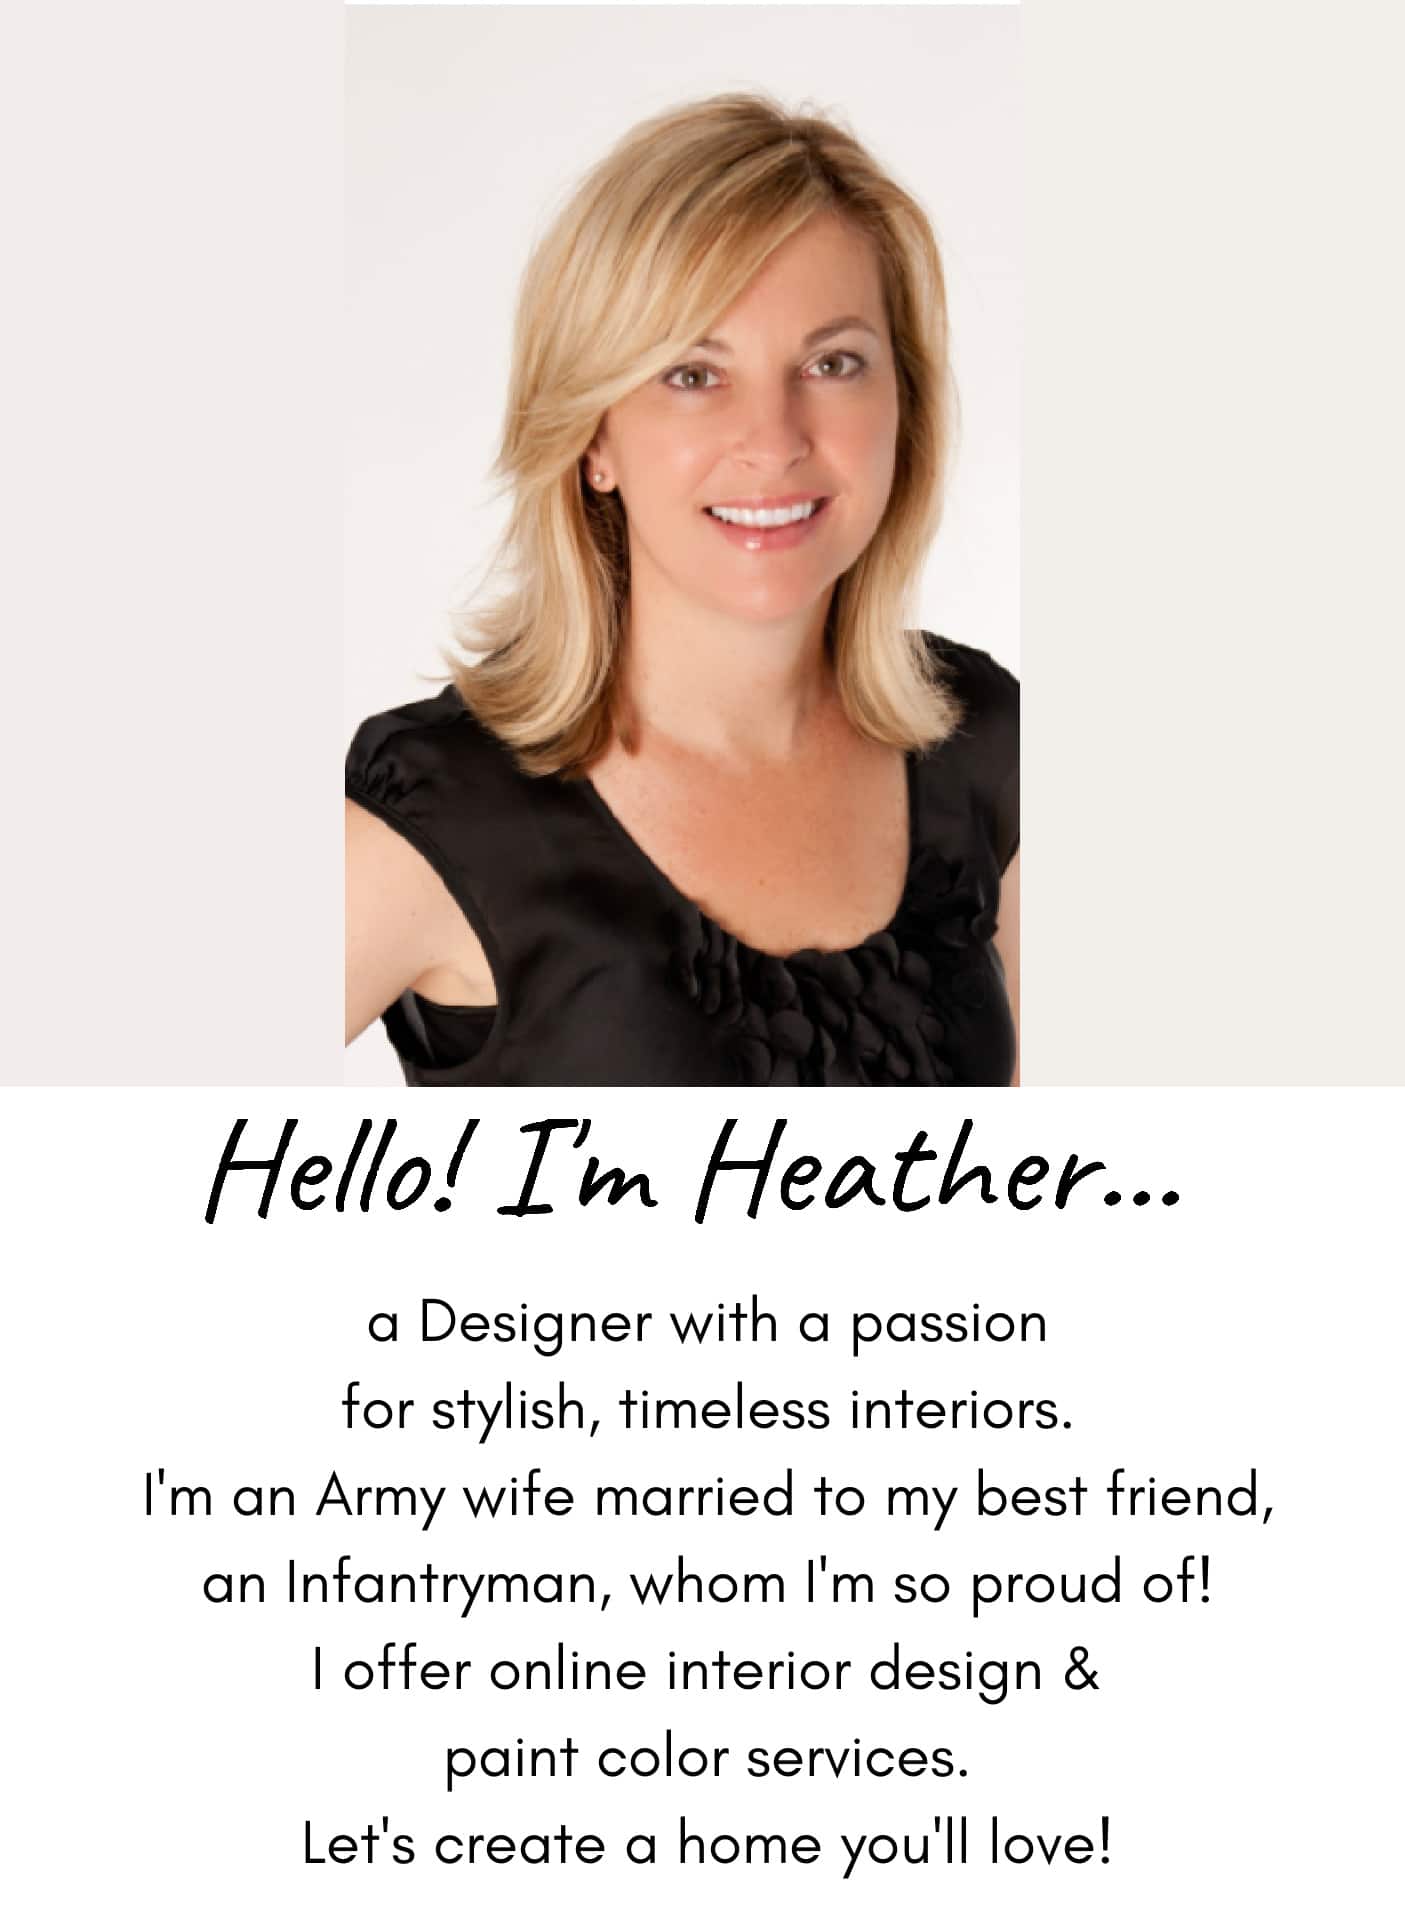 Hello! I'm Heather - Designer and Influencer at SettingforFour.com! 